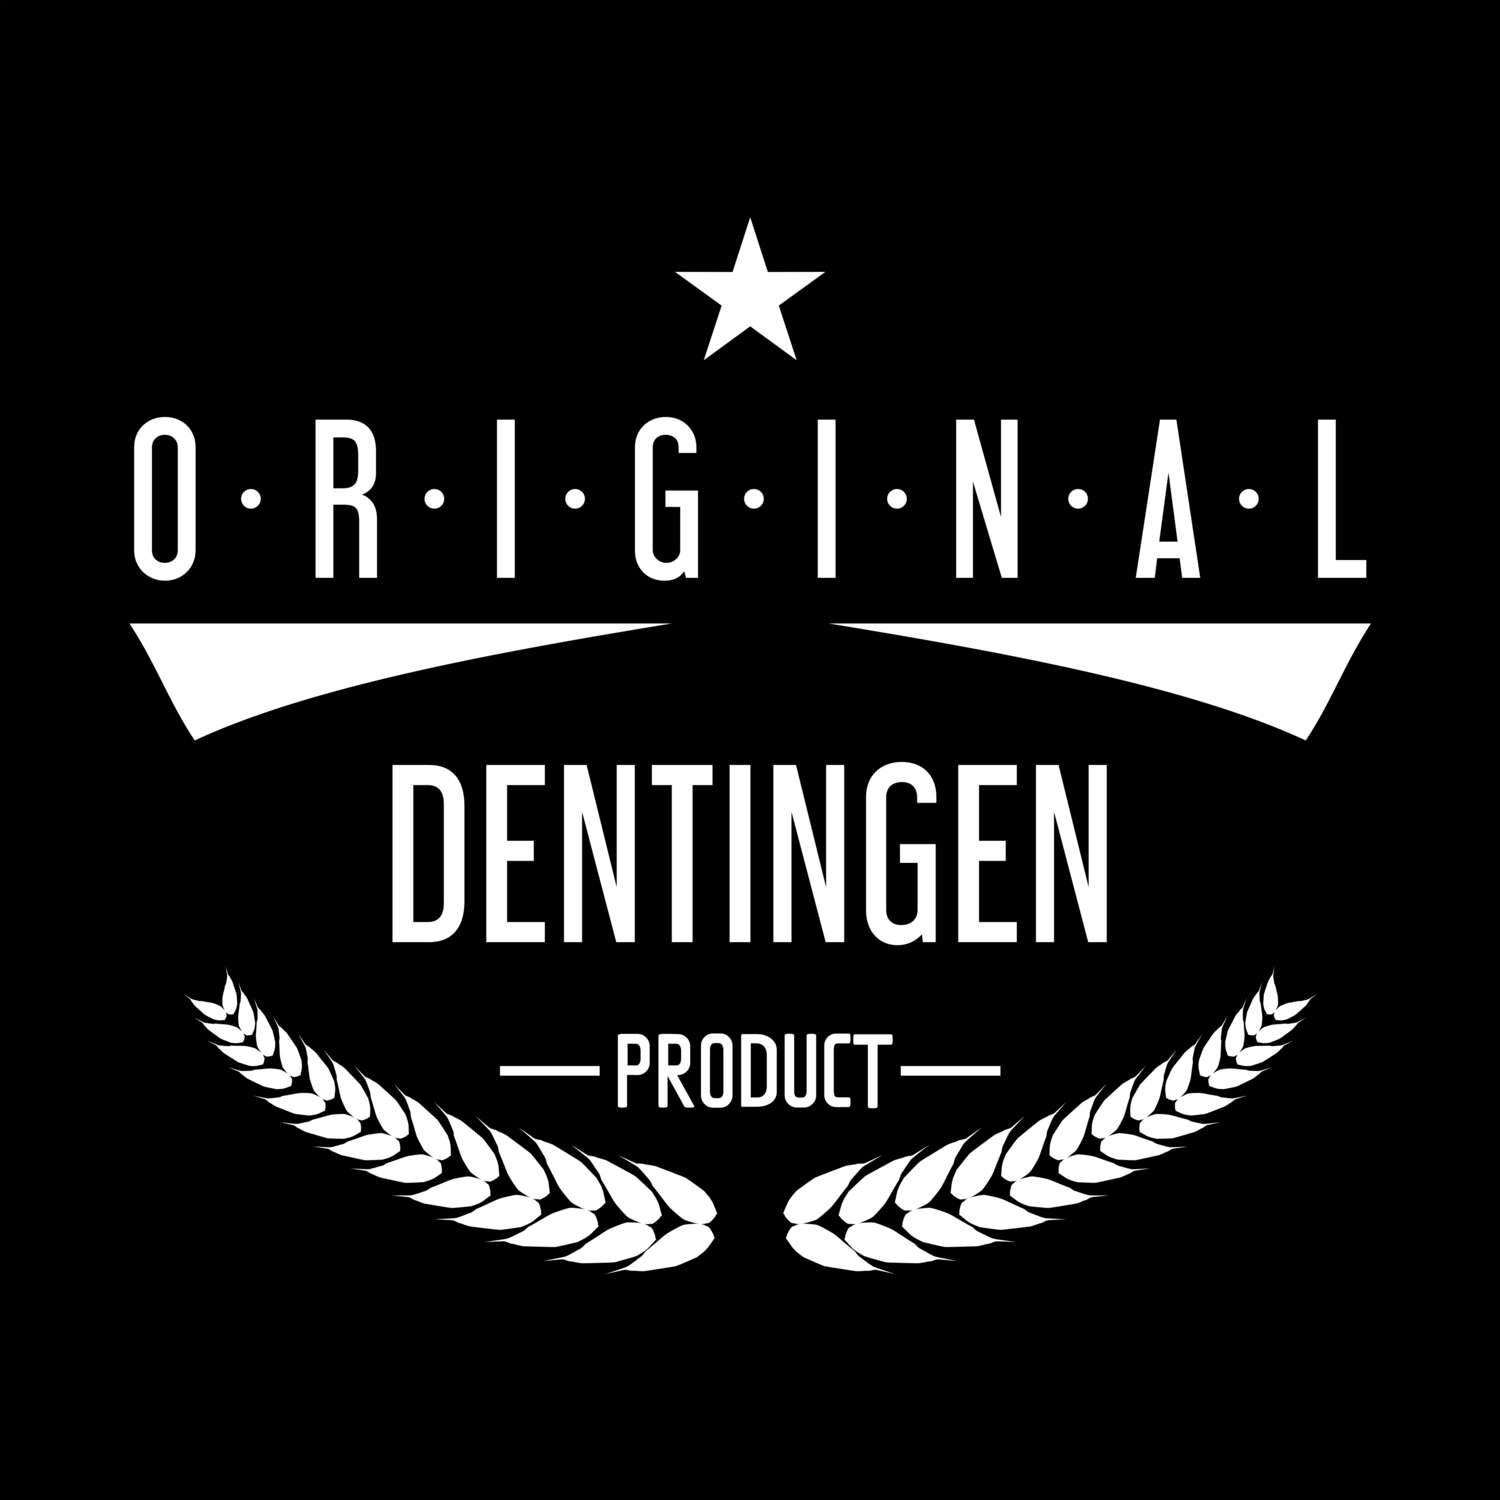 Dentingen T-Shirt »Original Product«